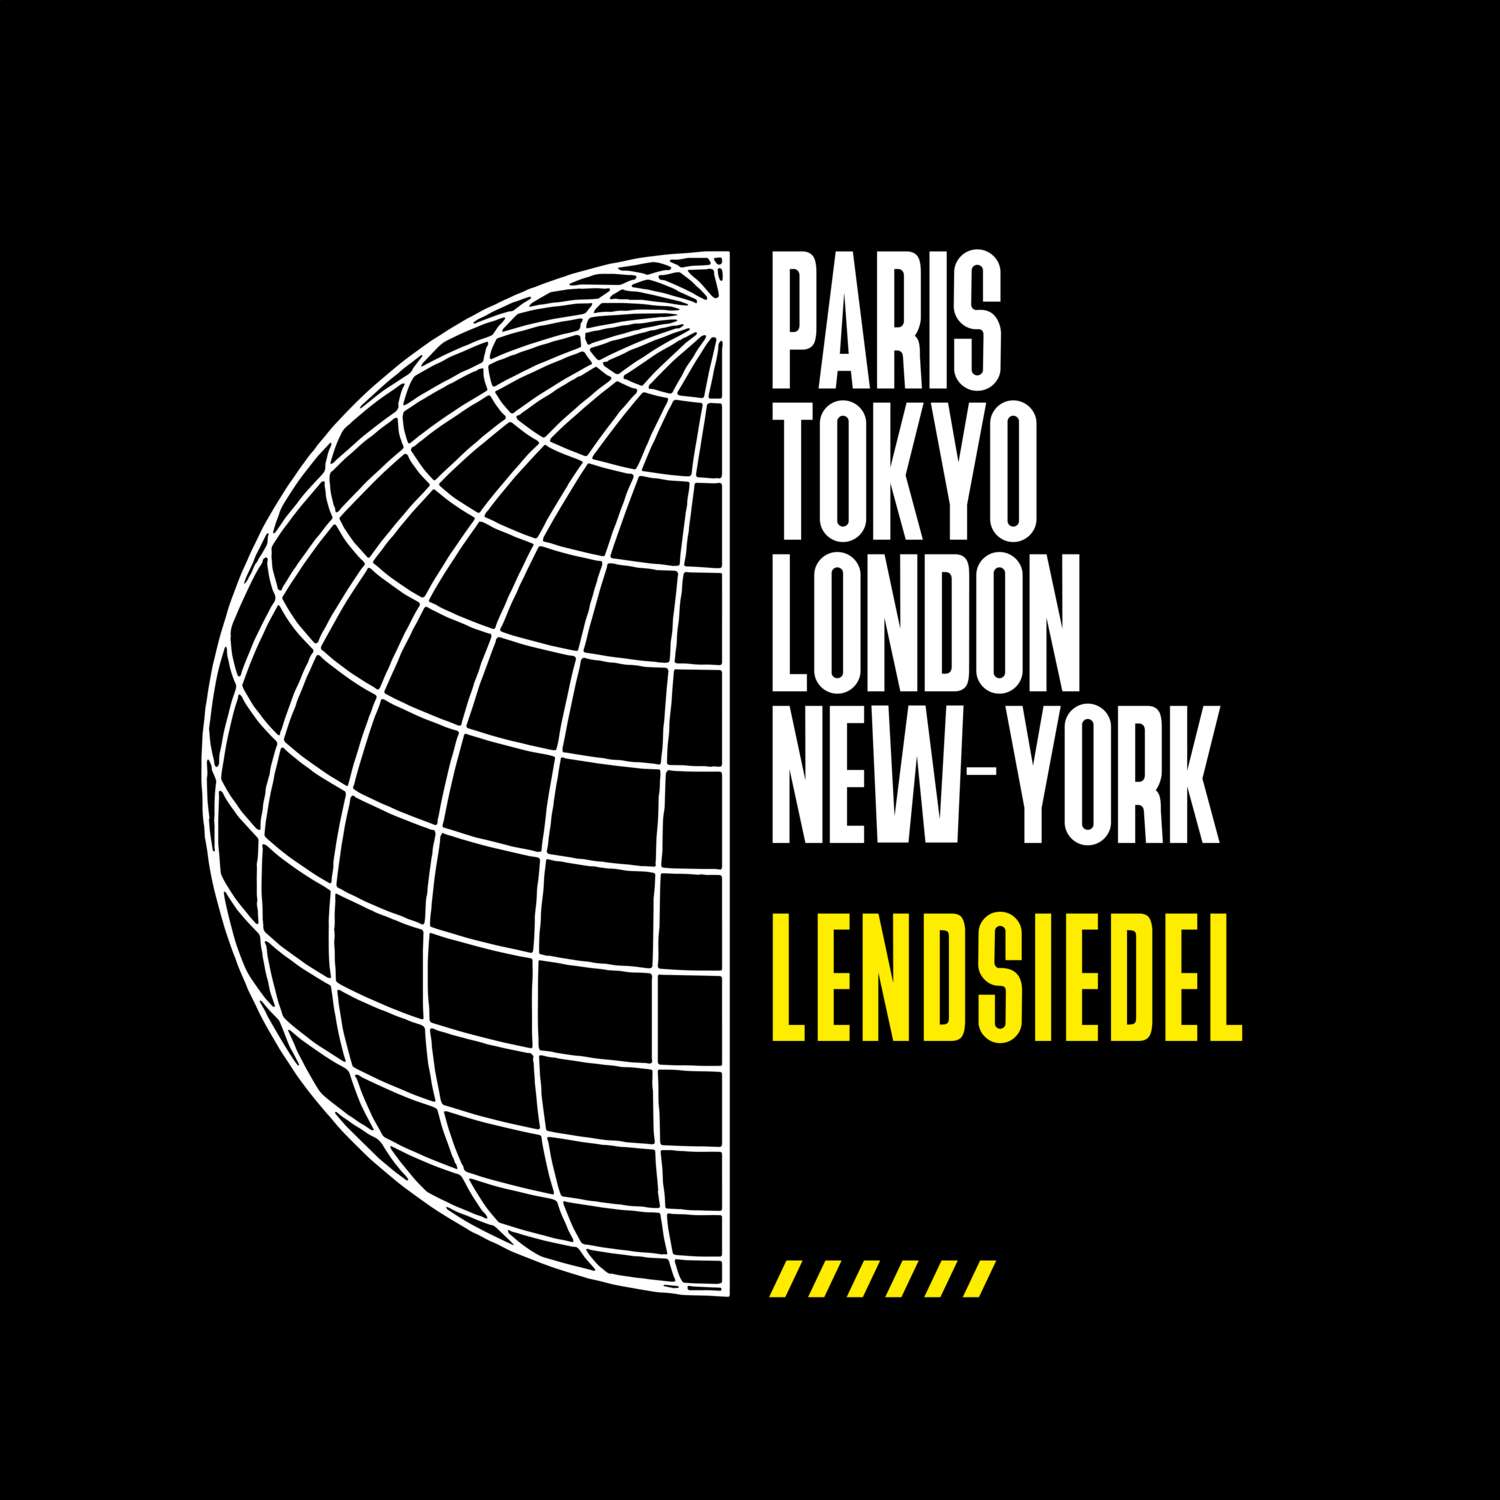 Lendsiedel T-Shirt »Paris Tokyo London«